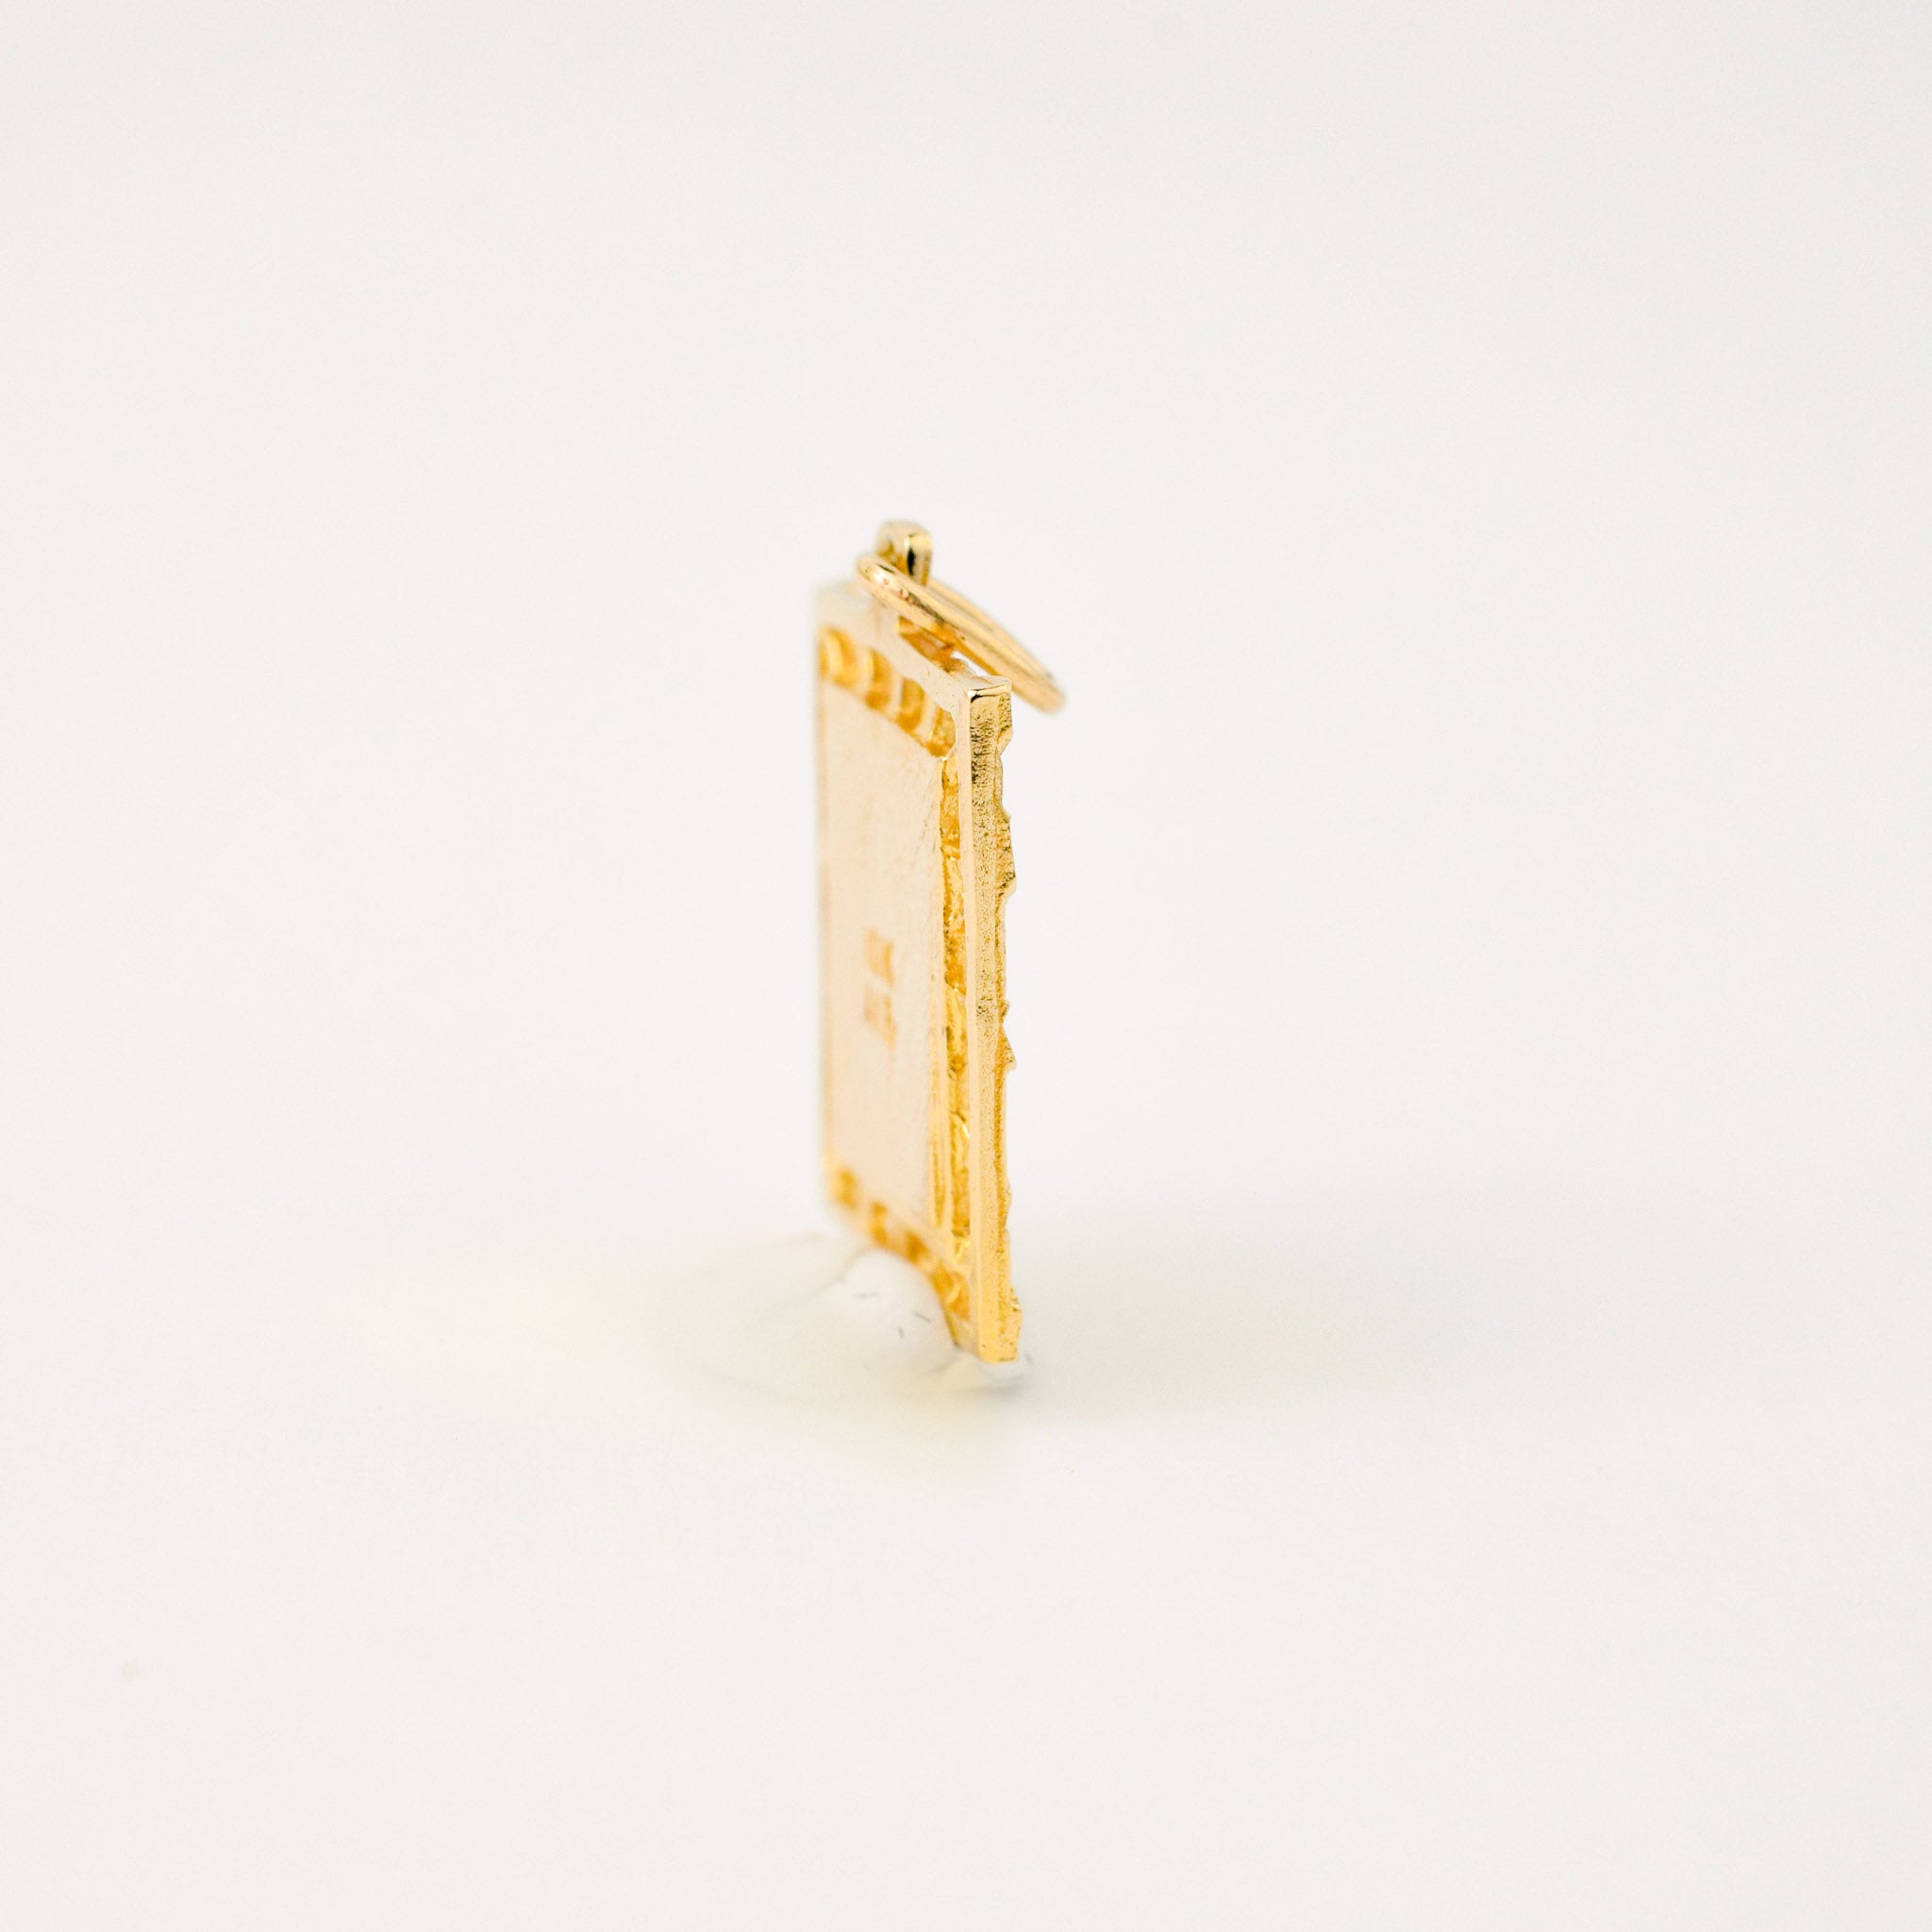 vintage gold 'A' charm pendant 